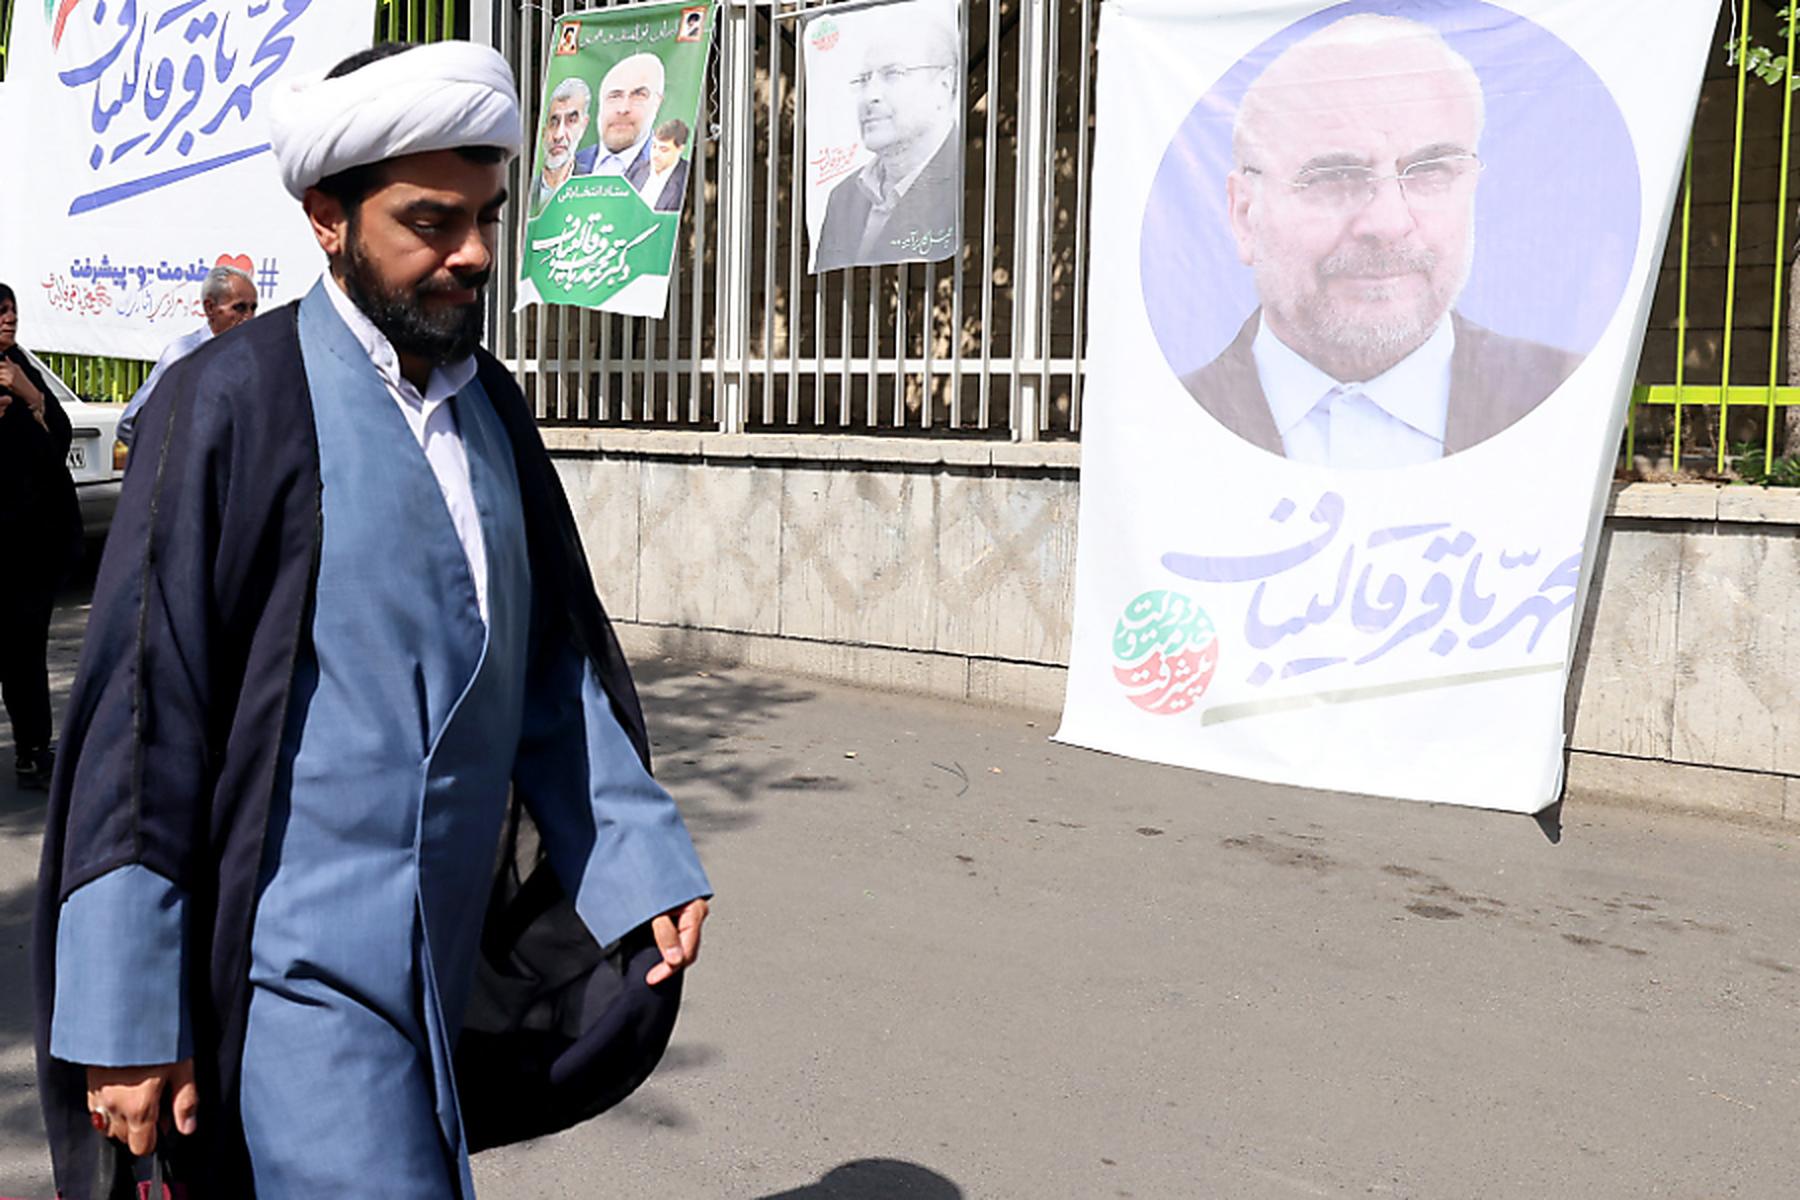 Teheran: Iraner wählen einen neuen Präsidenten